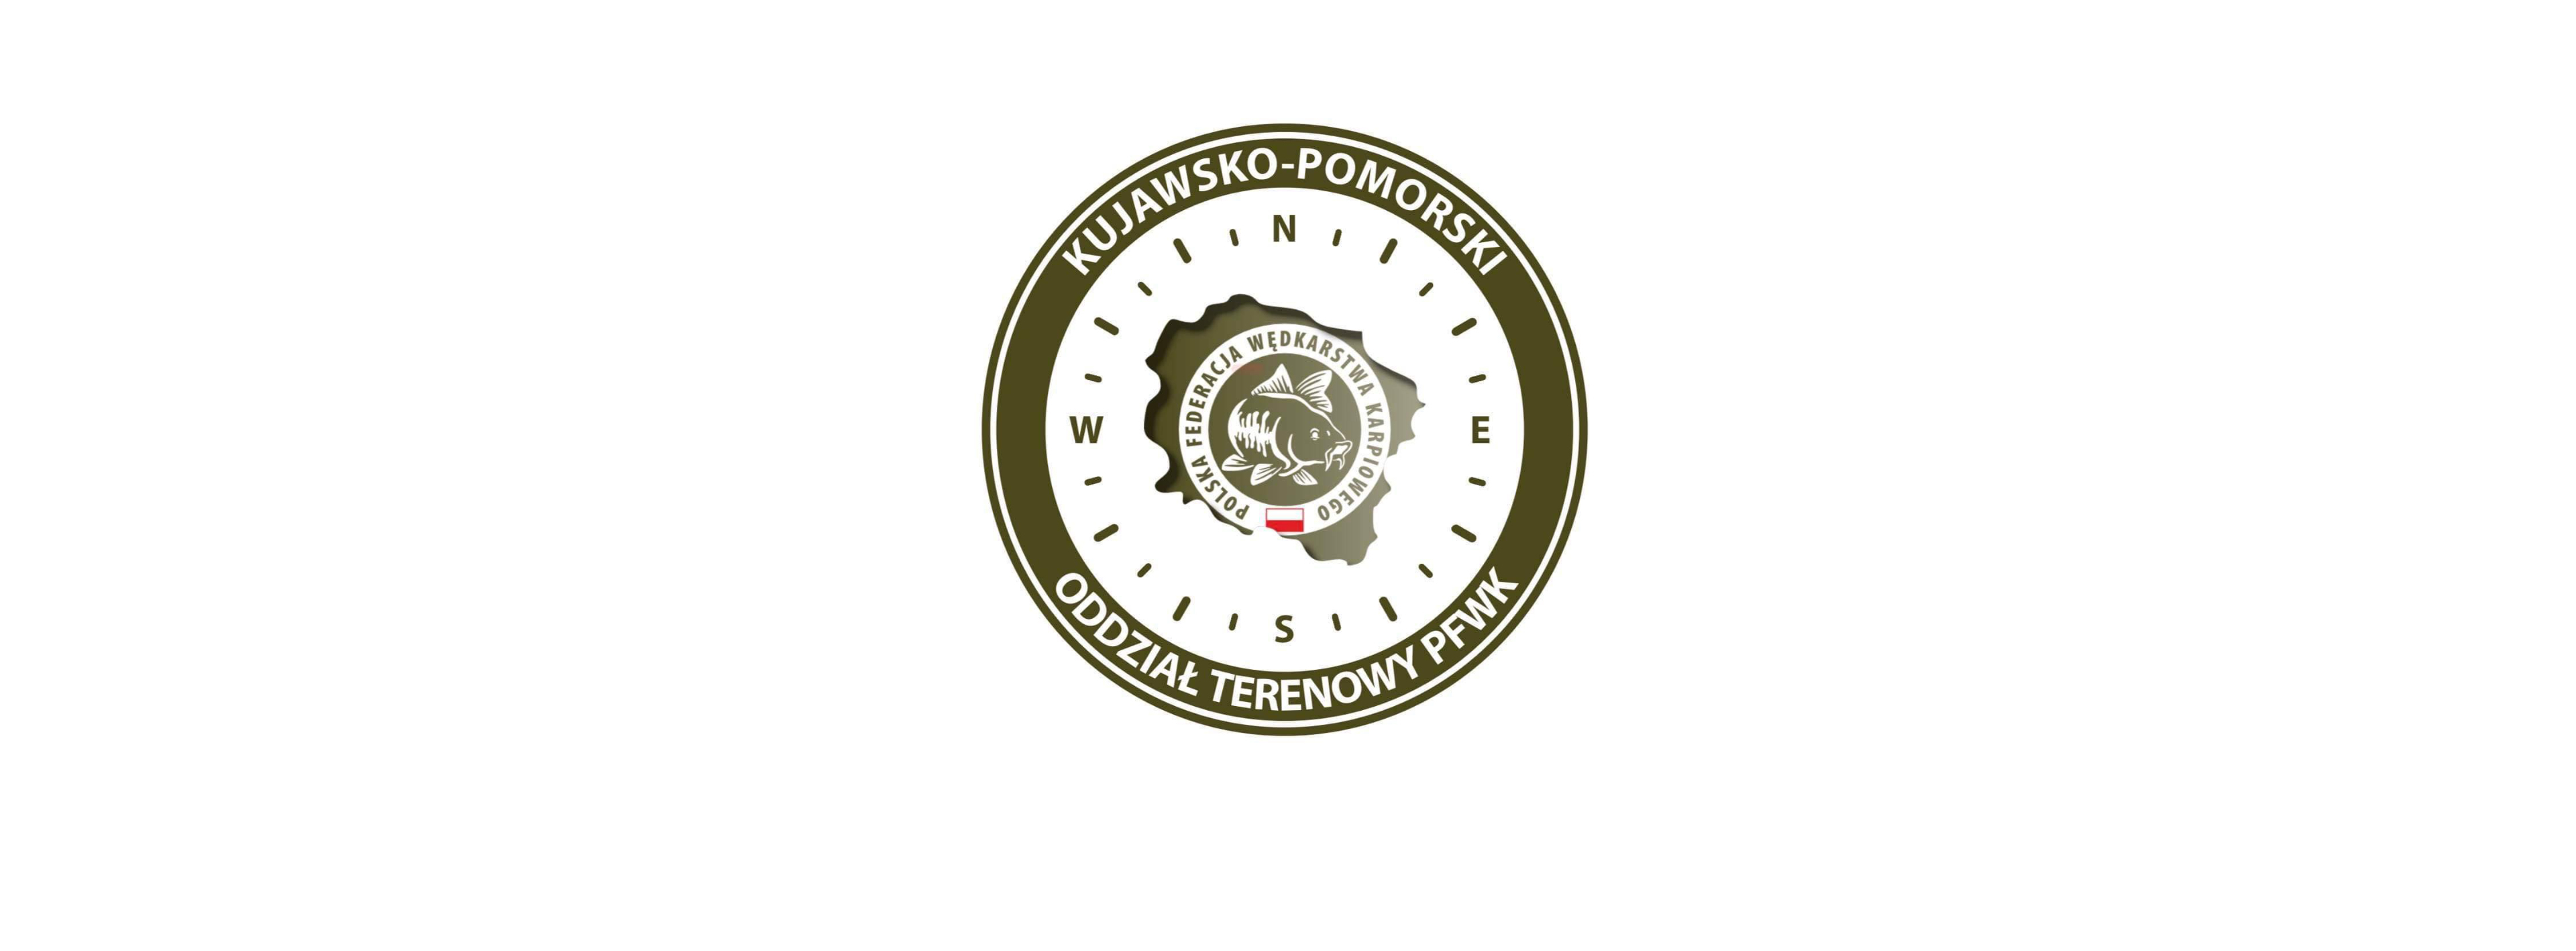 1🏆Puchar Kujawsko-Pomorskiego oddziału terenowego PFWK